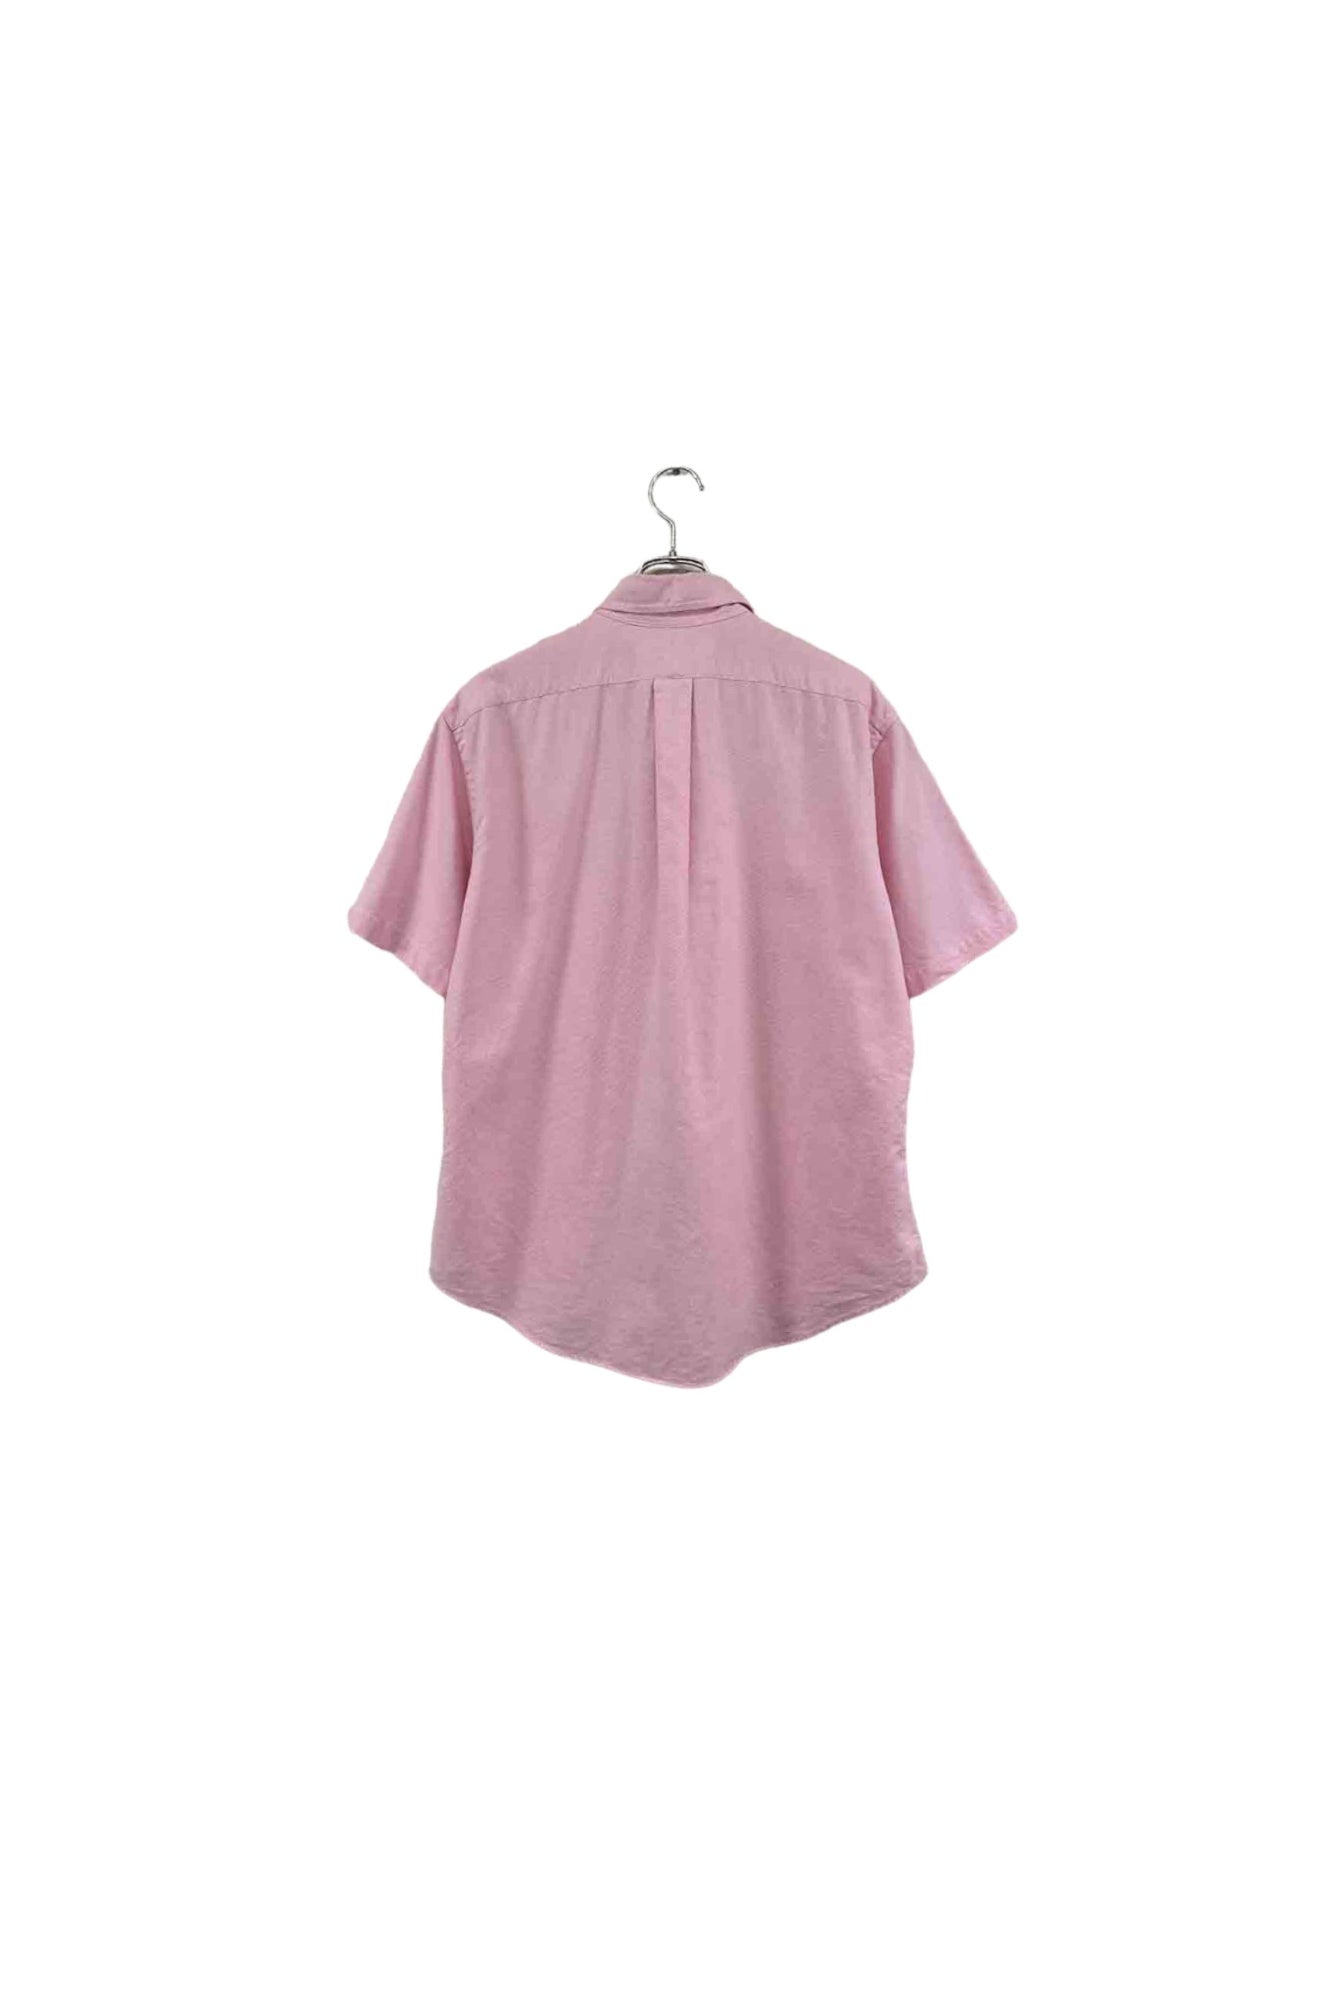 90's Ralph Lauren pink shirt